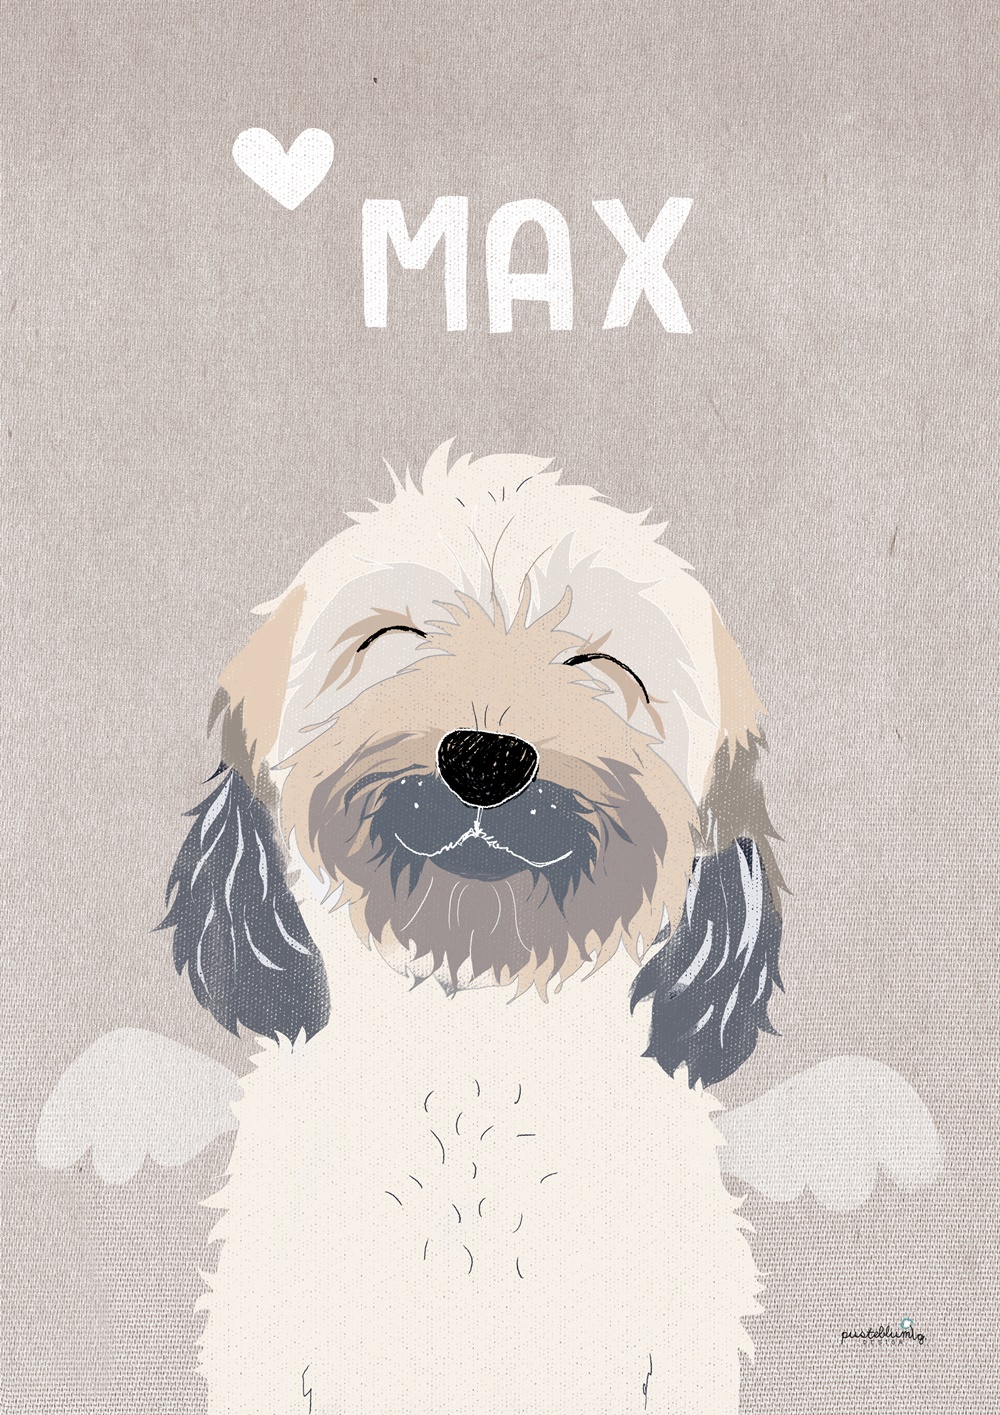 Max-wuschelhund-tibet-terrier-tibetan-terrier-zobel-bester-hund-regenbogenbrücke-wir-vermissen-dich-22.08.2019 - heute wäre Max 10 Jahre alt geworden